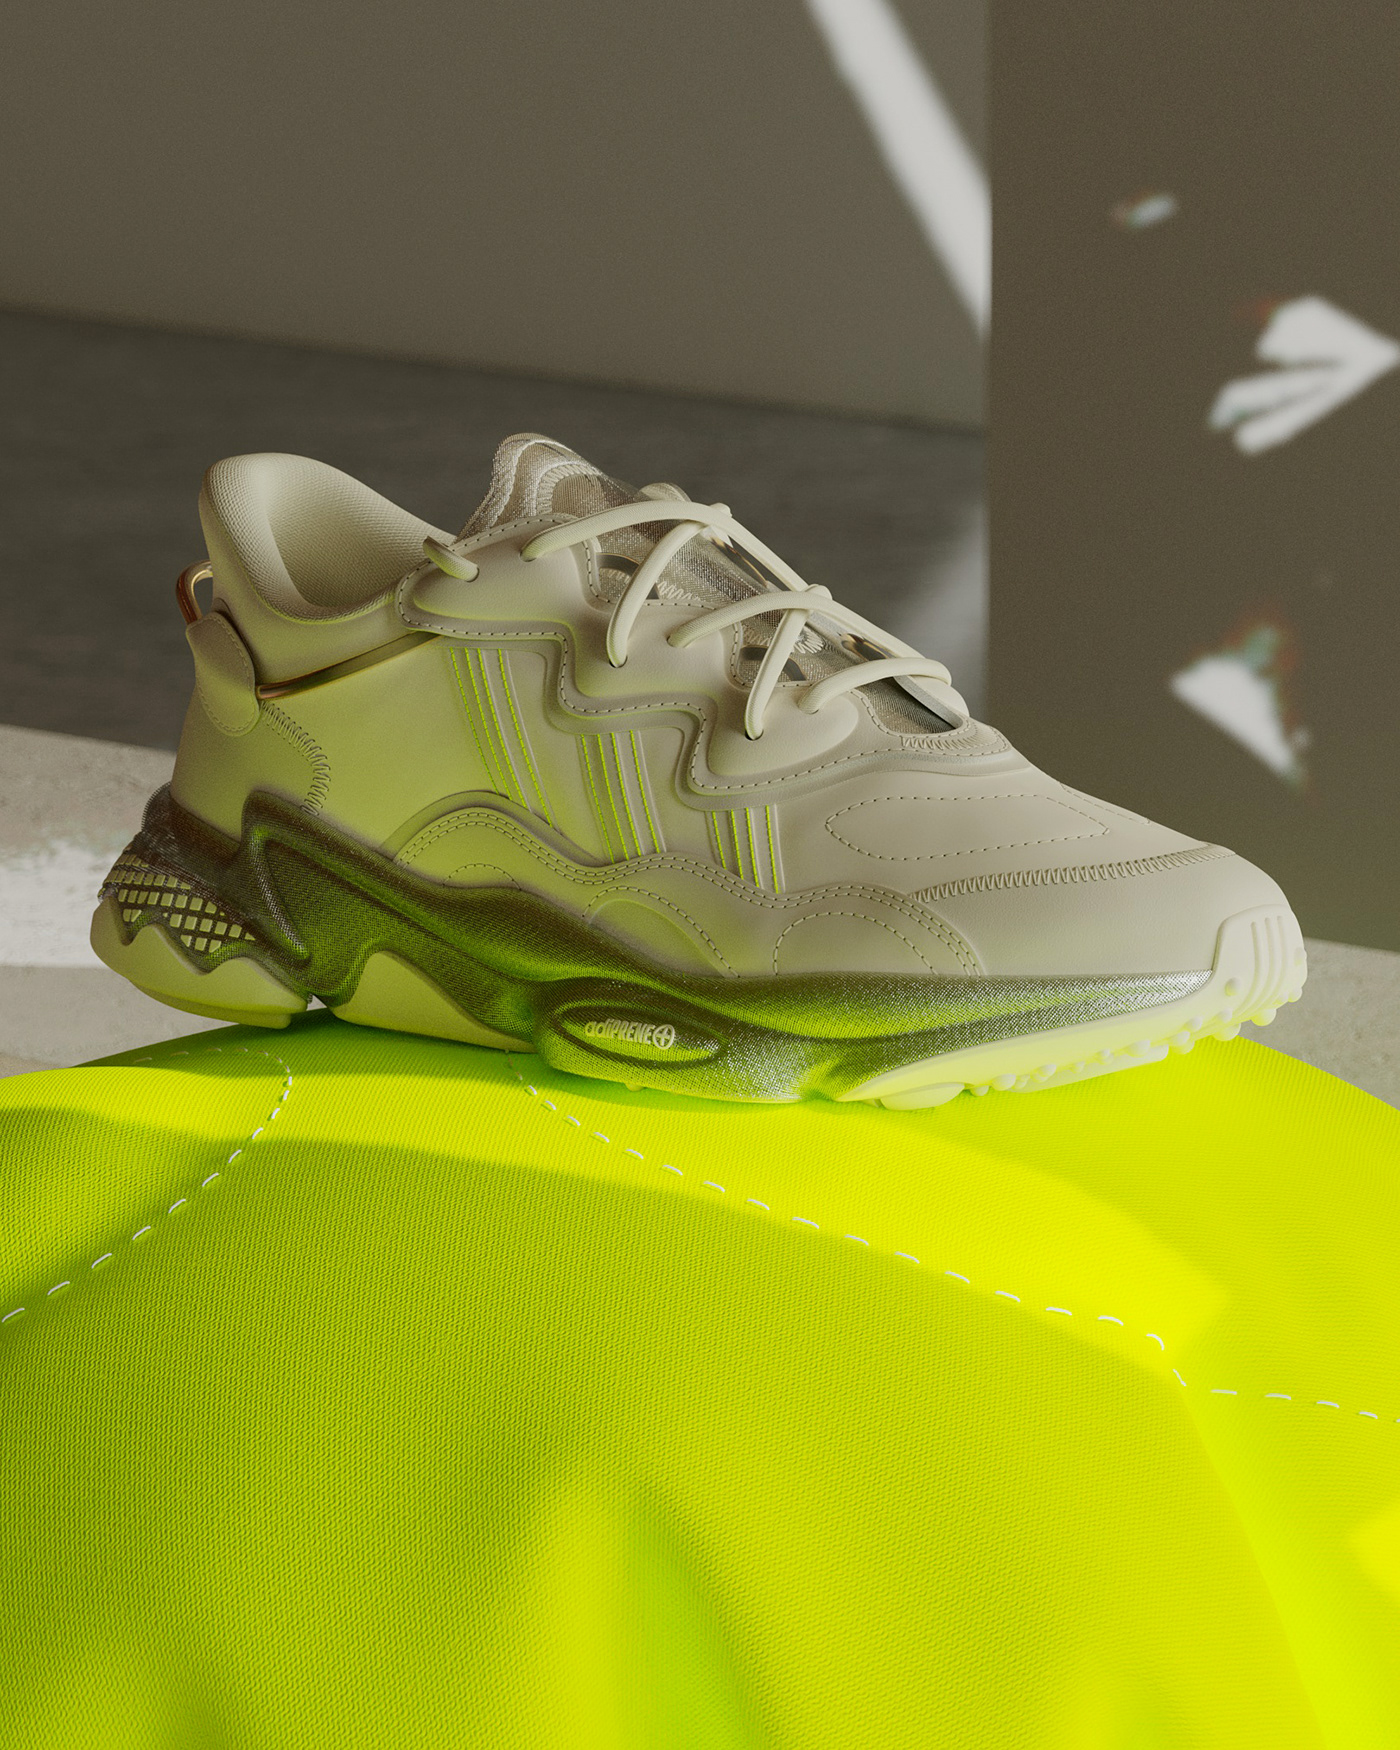 3D adidas adidasoriginals c4d cinema4d redshift Render shoe sneakers